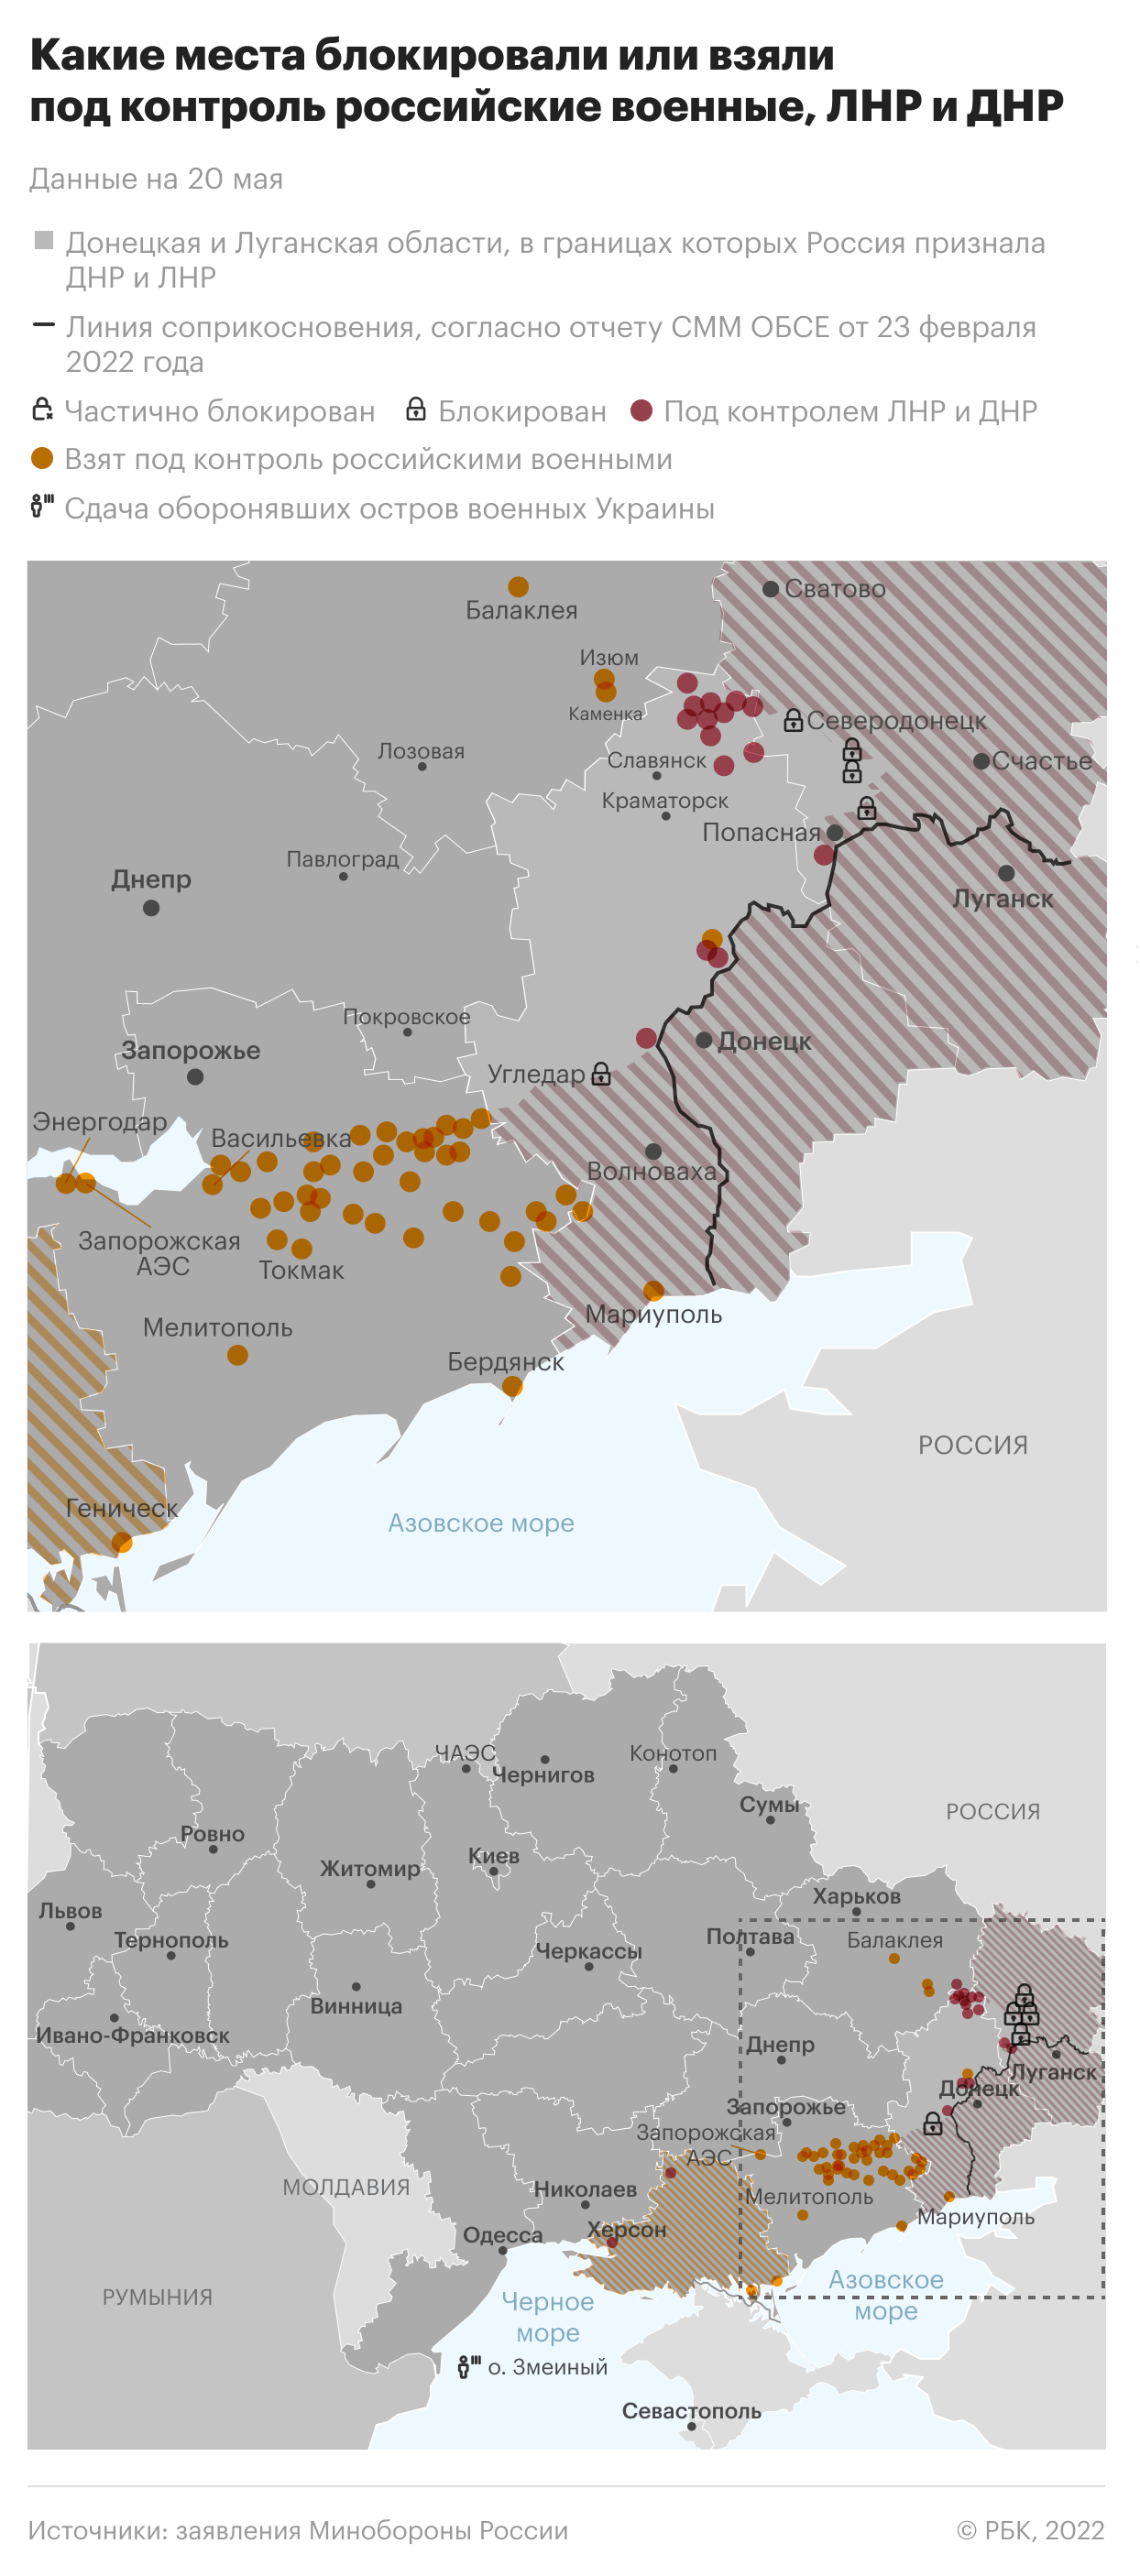 Зеленский назвал число участников боевых действий на стороне Украины"/>













